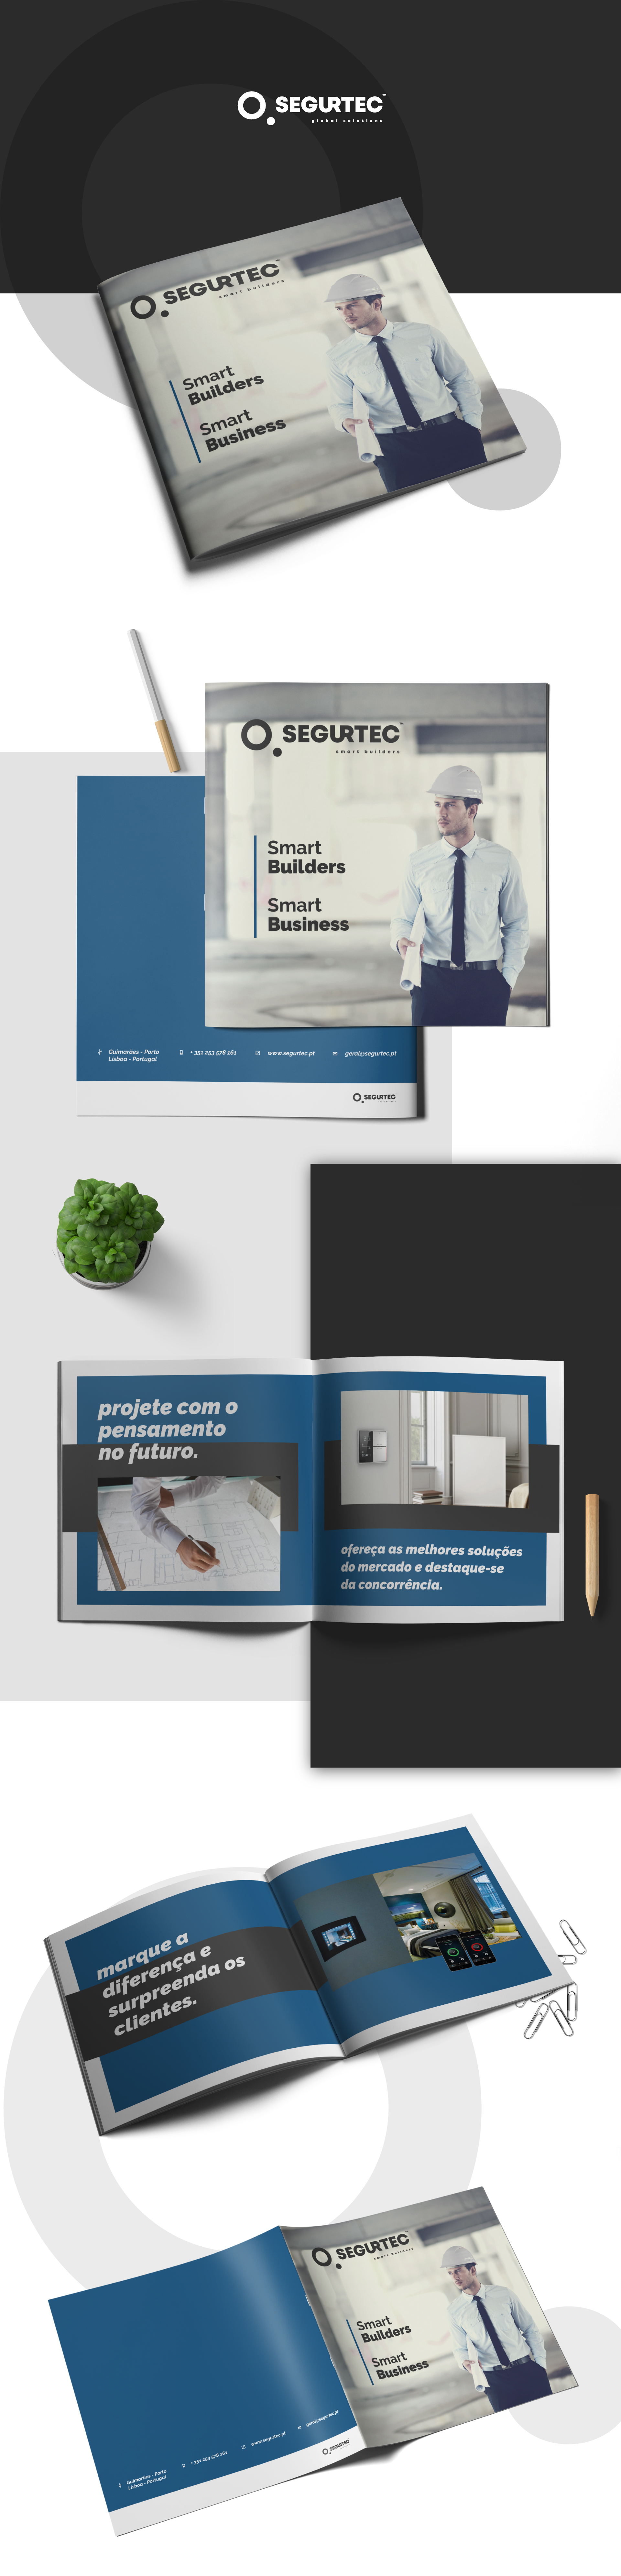 Brochura desenvolvida para a marca Segurtec - mais um trabalho de Editorial da UNIFY